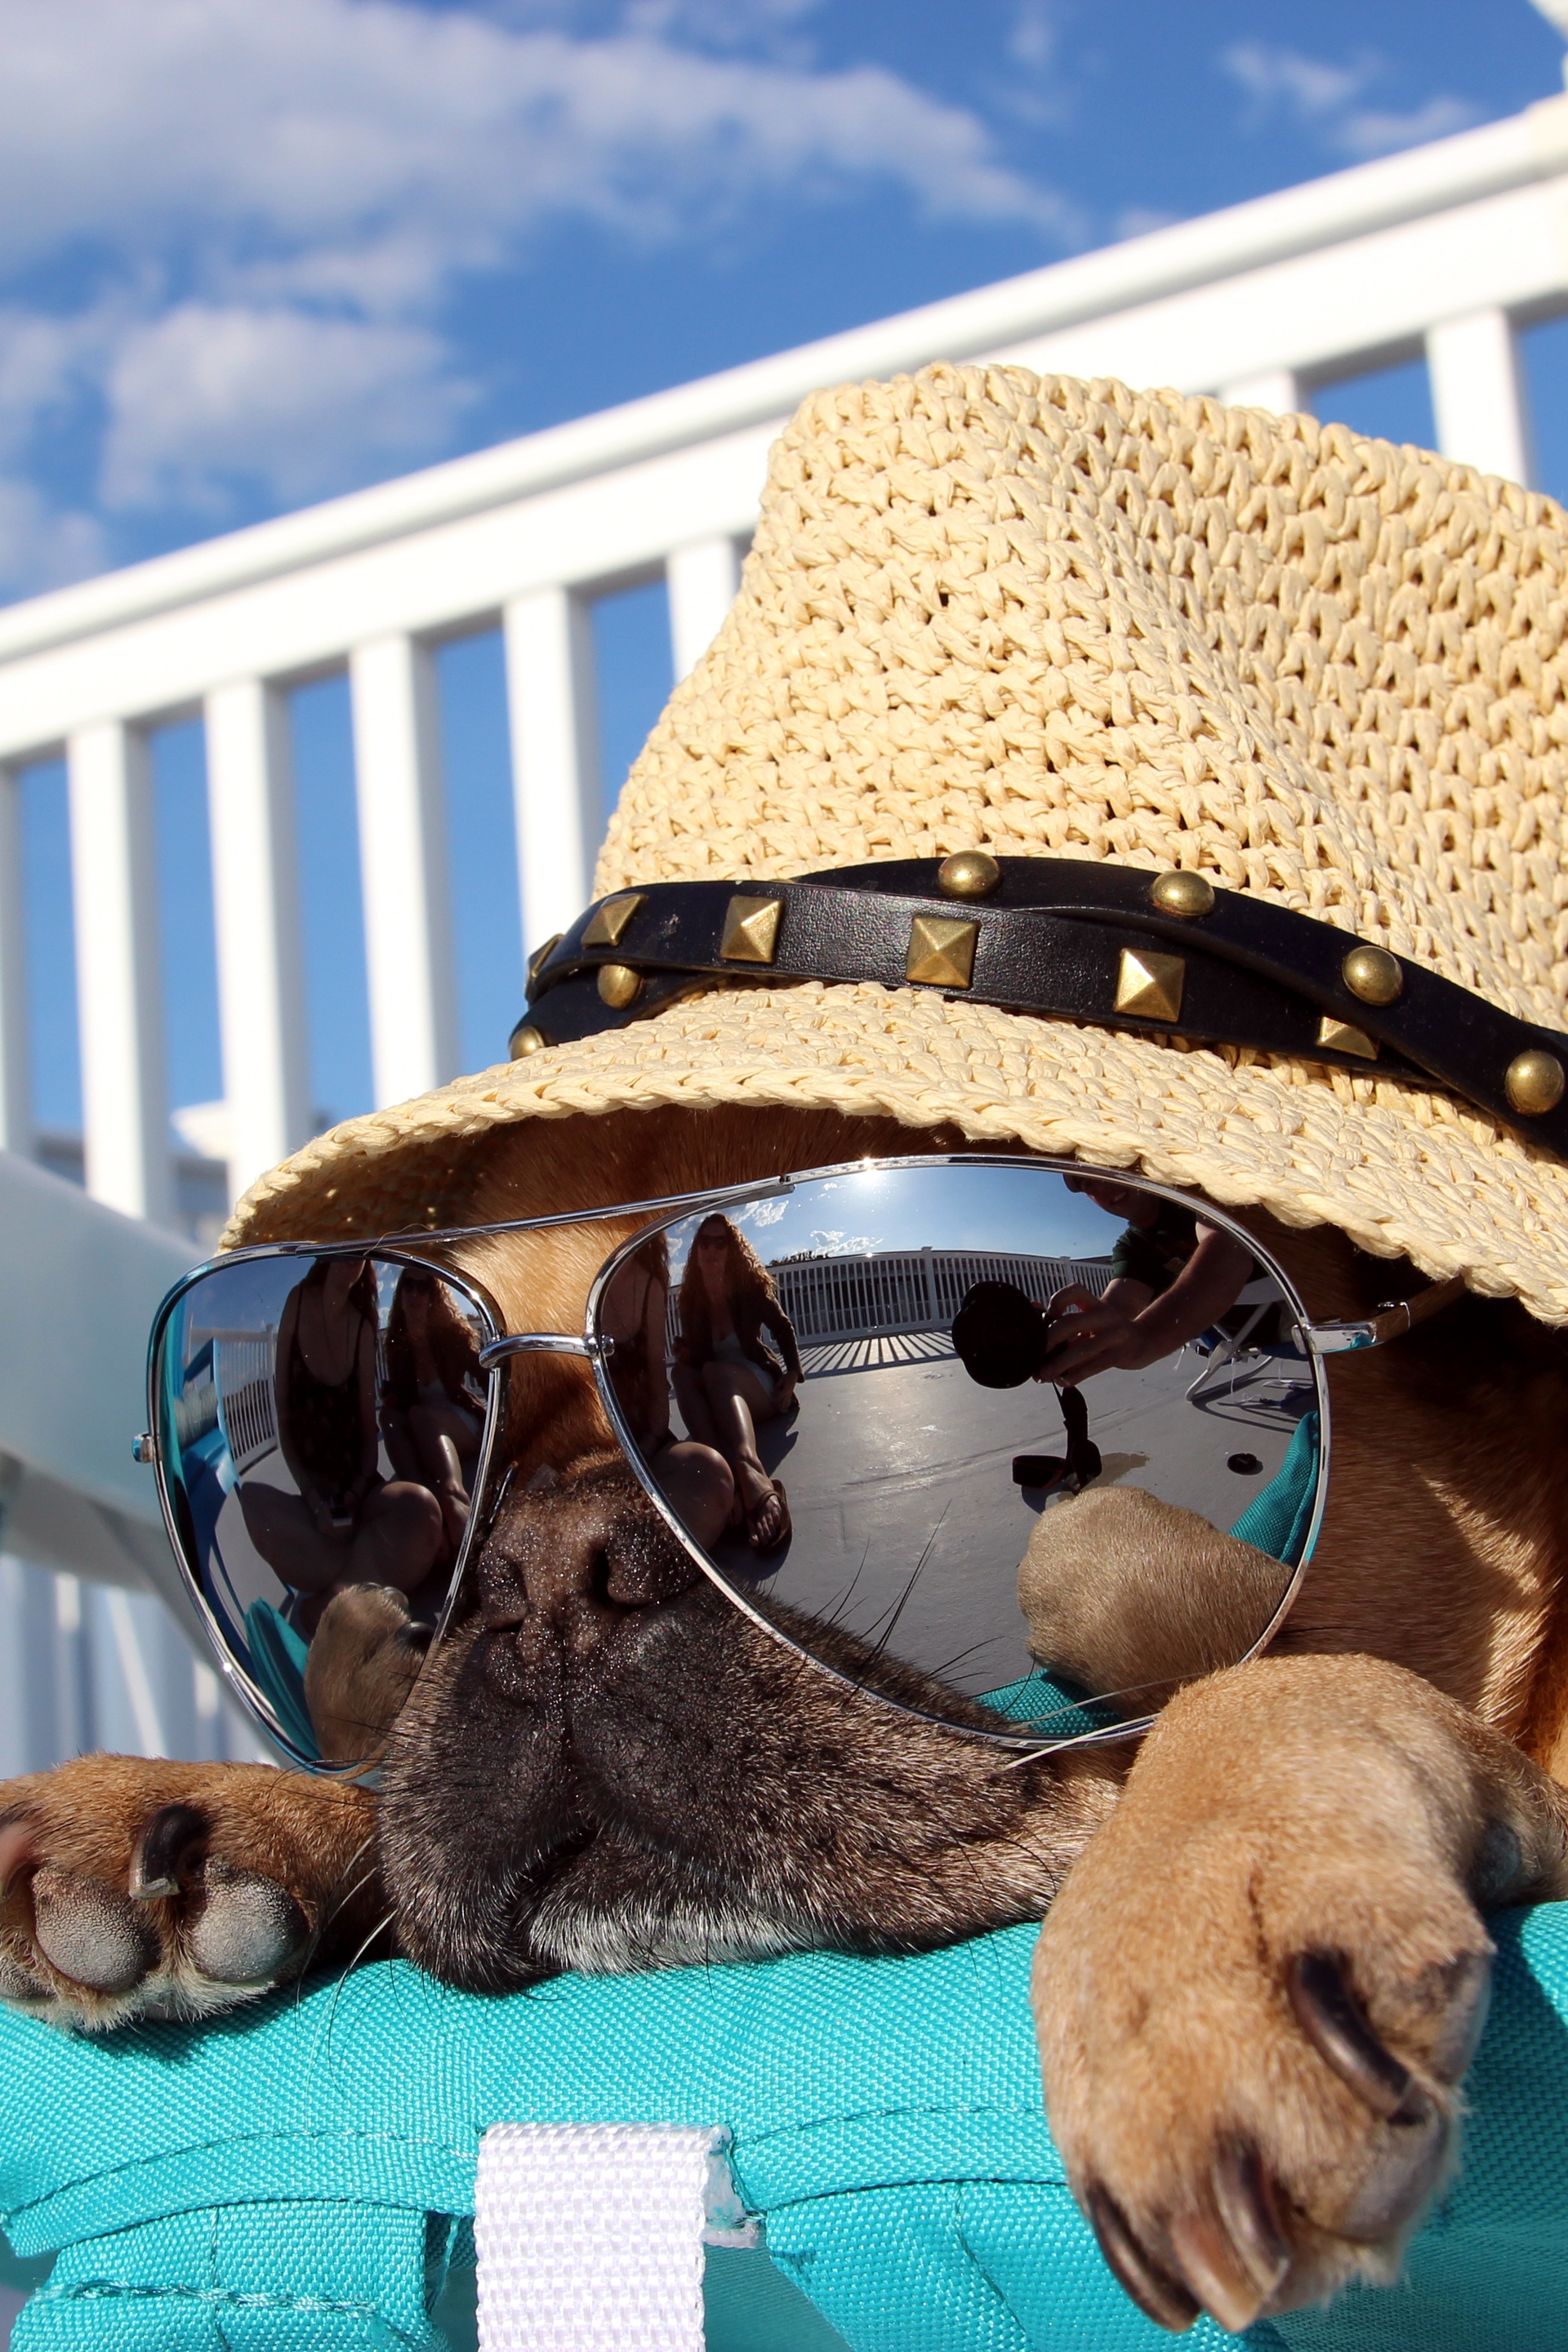 Картинка: Собака, шляпа, очки, отражение, лежит, шезлонг, отдых, небо, облака